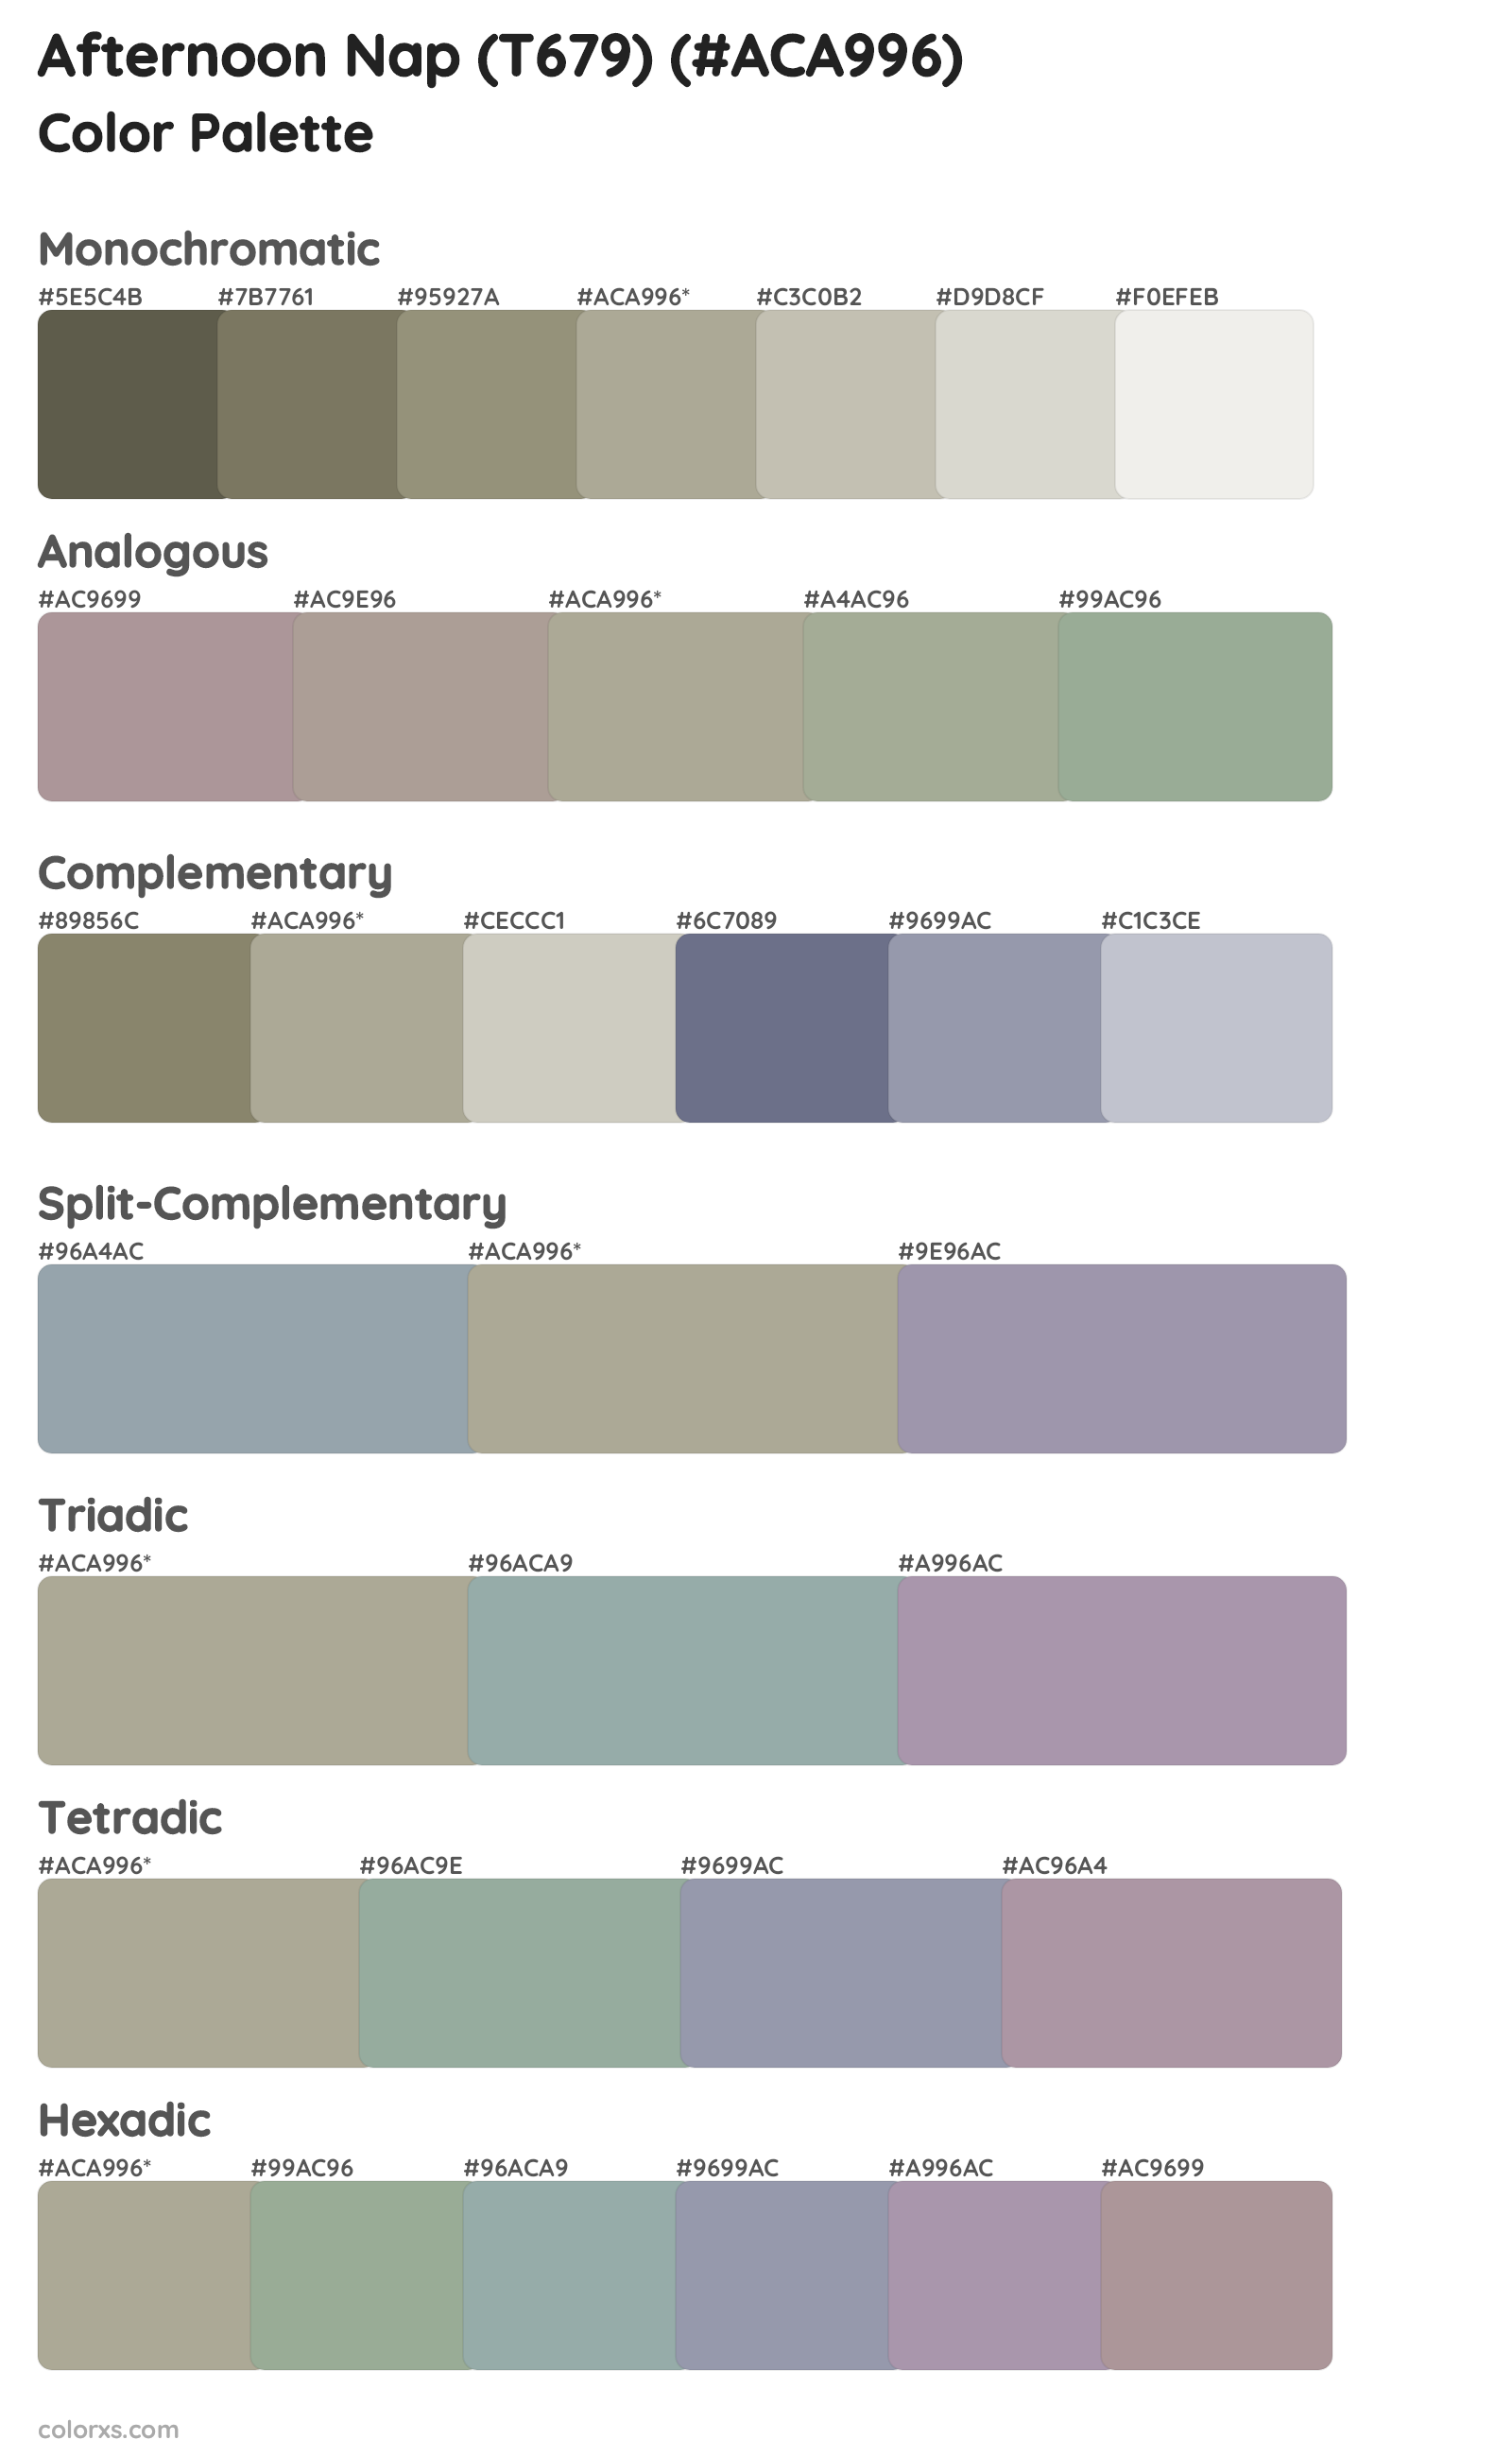 Afternoon Nap (T679) Color Scheme Palettes